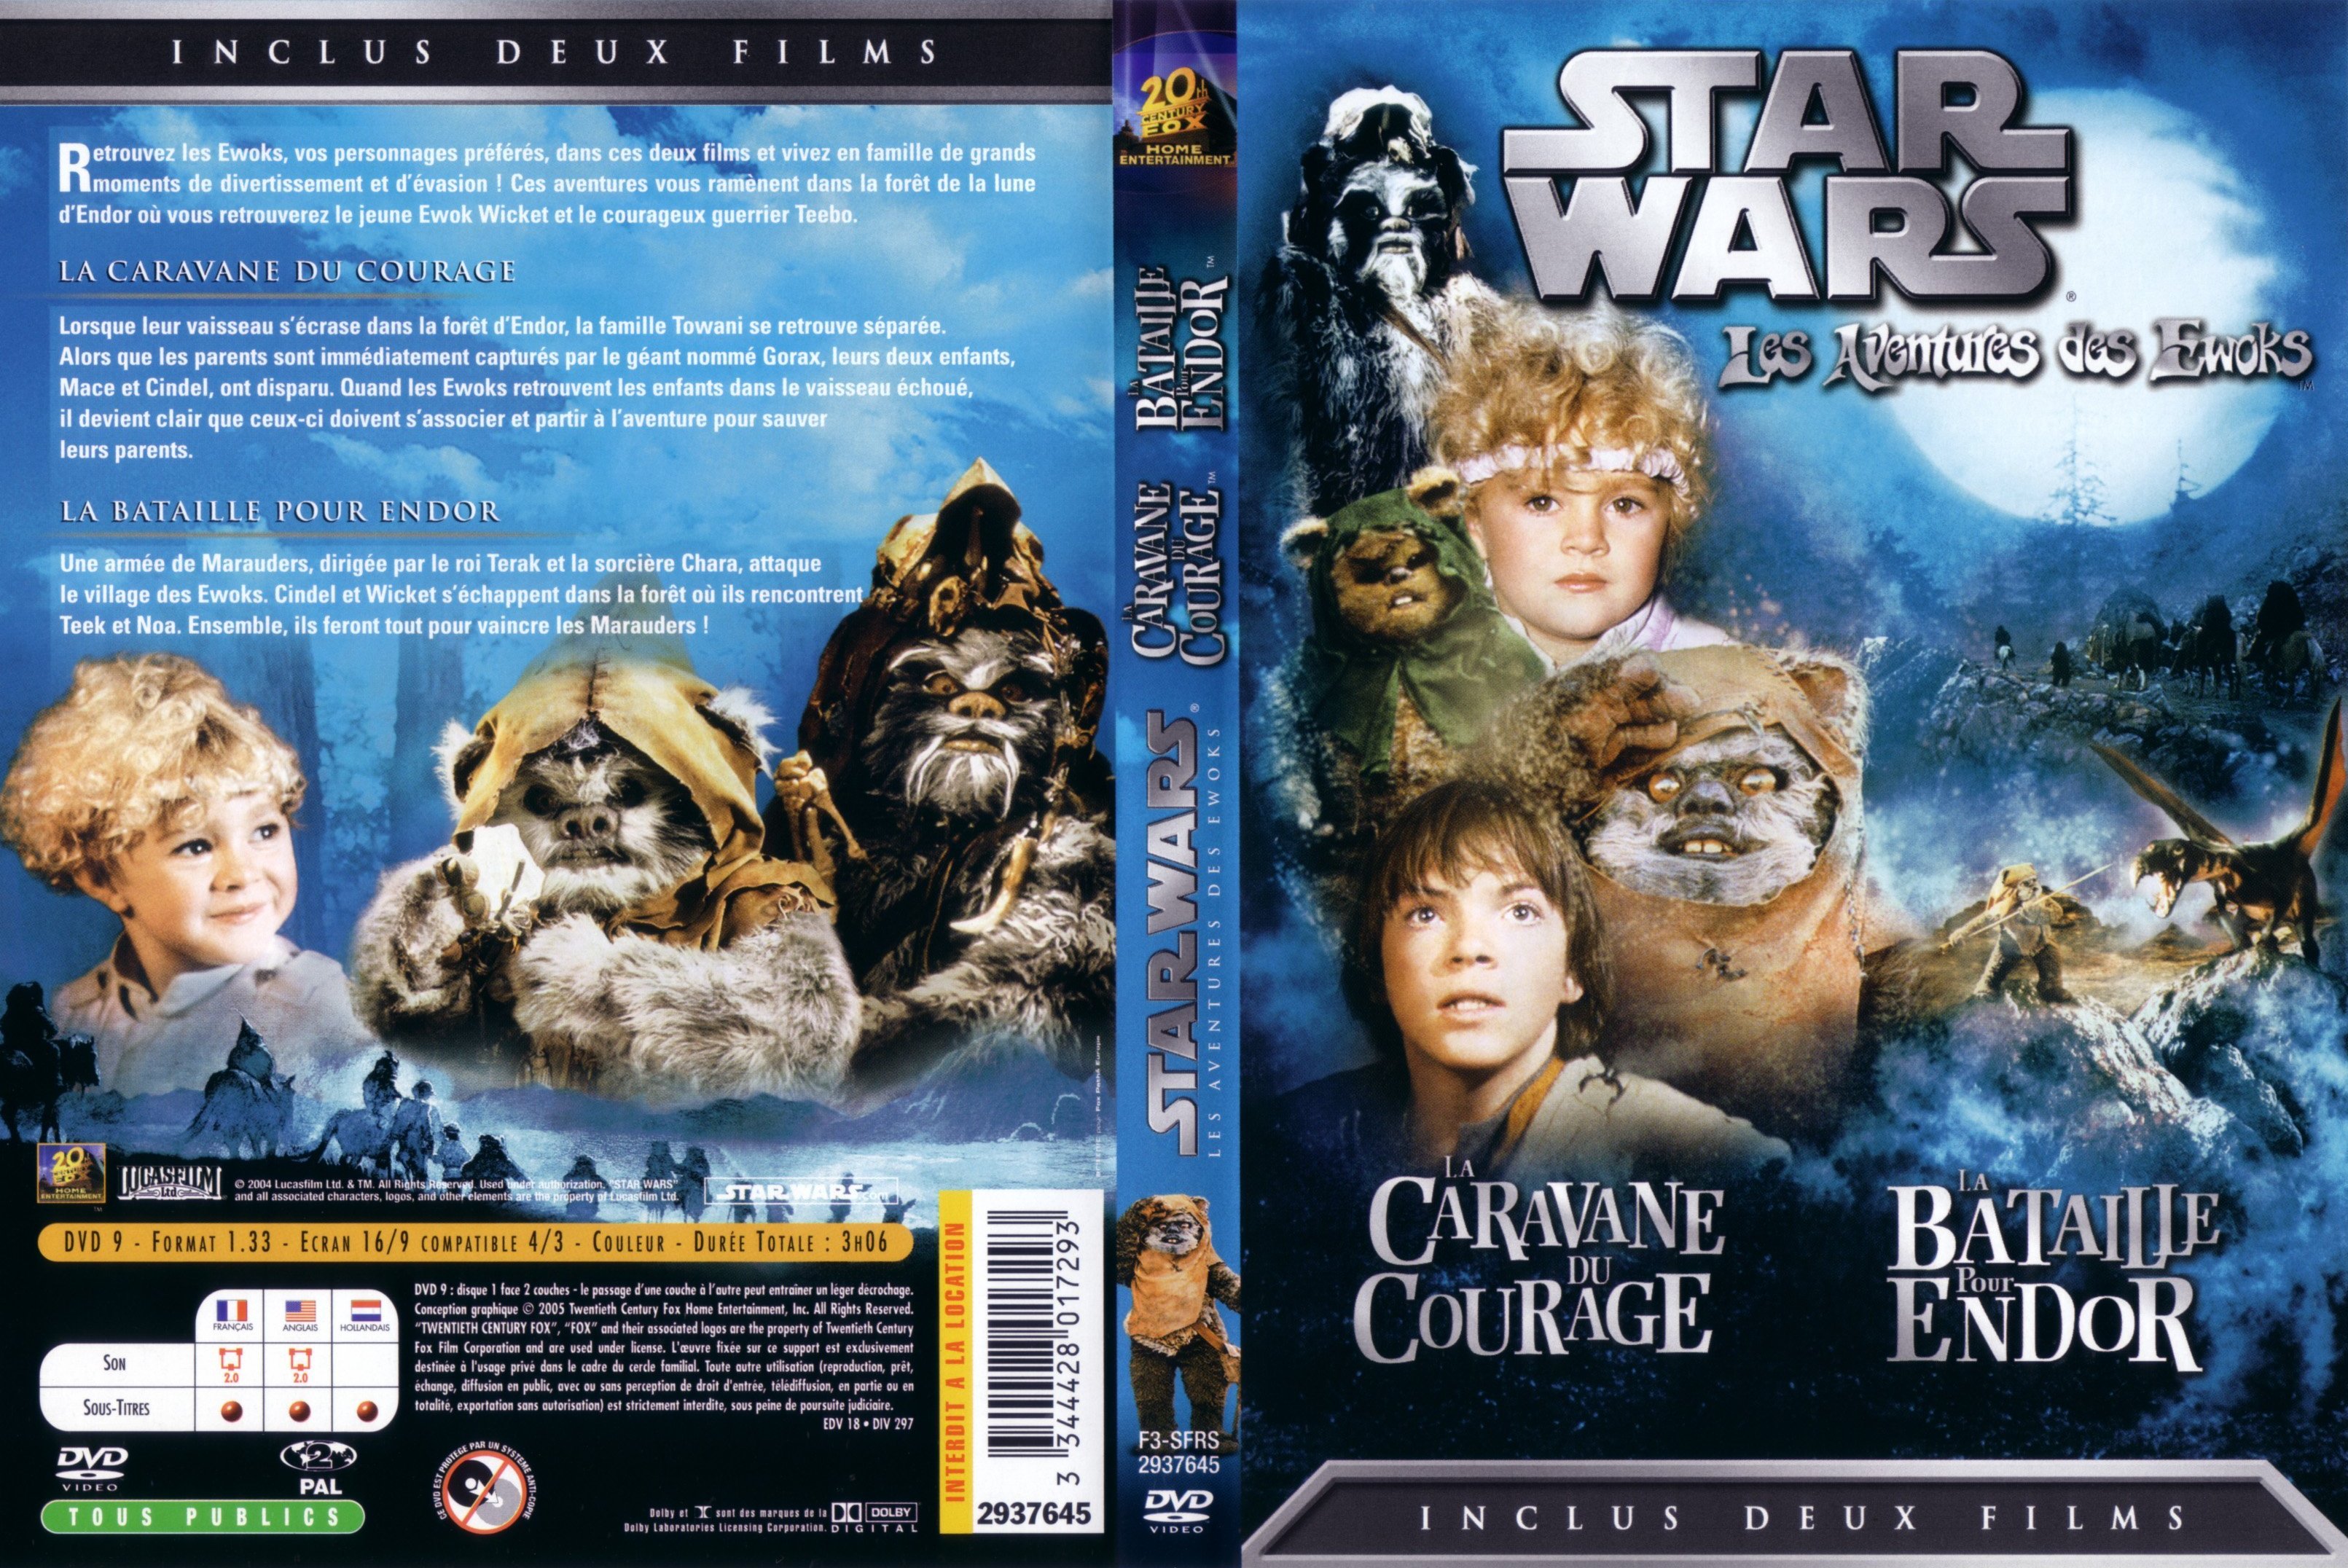 Jaquette DVD Star Wars Les aventures des Ewoks